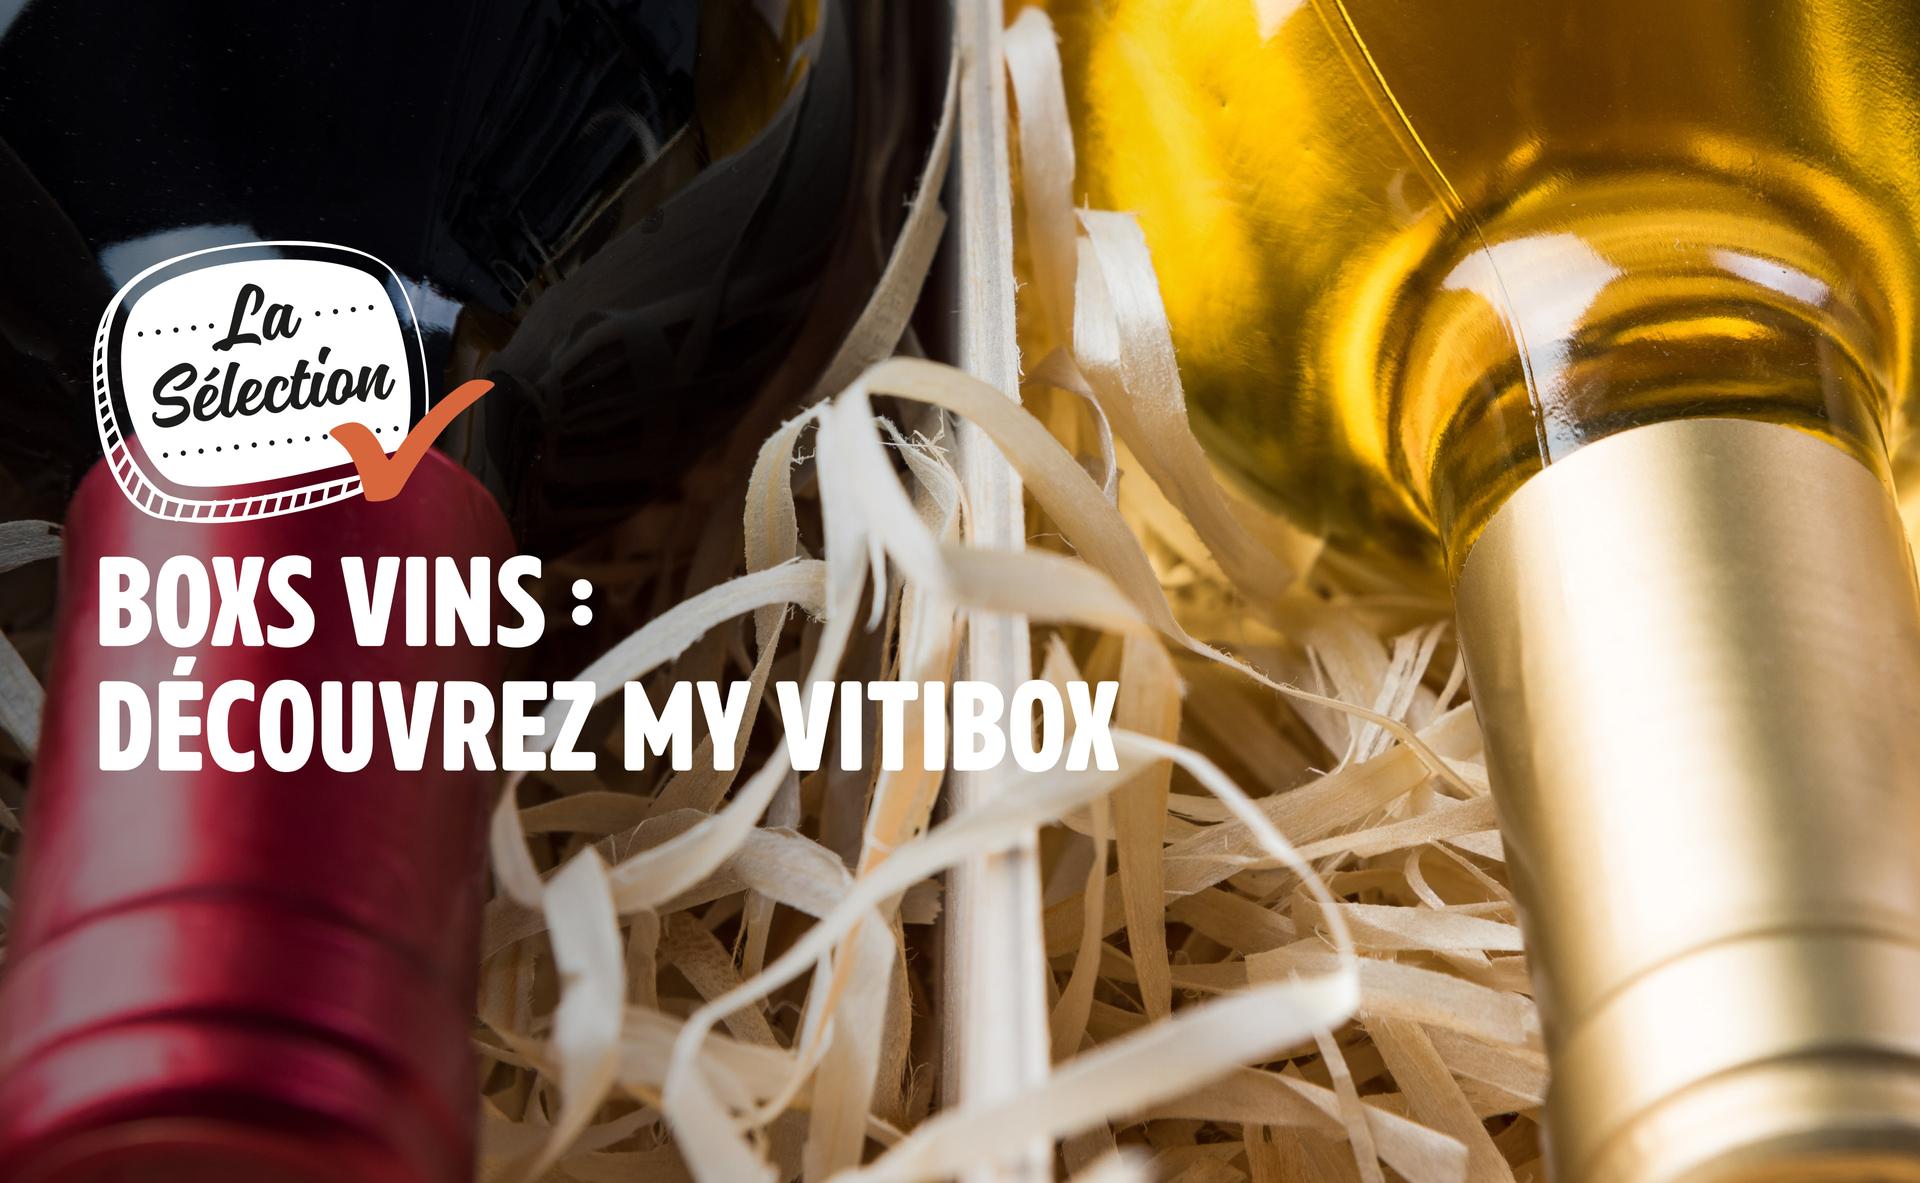 Box vins : découvrez My Vitibox !